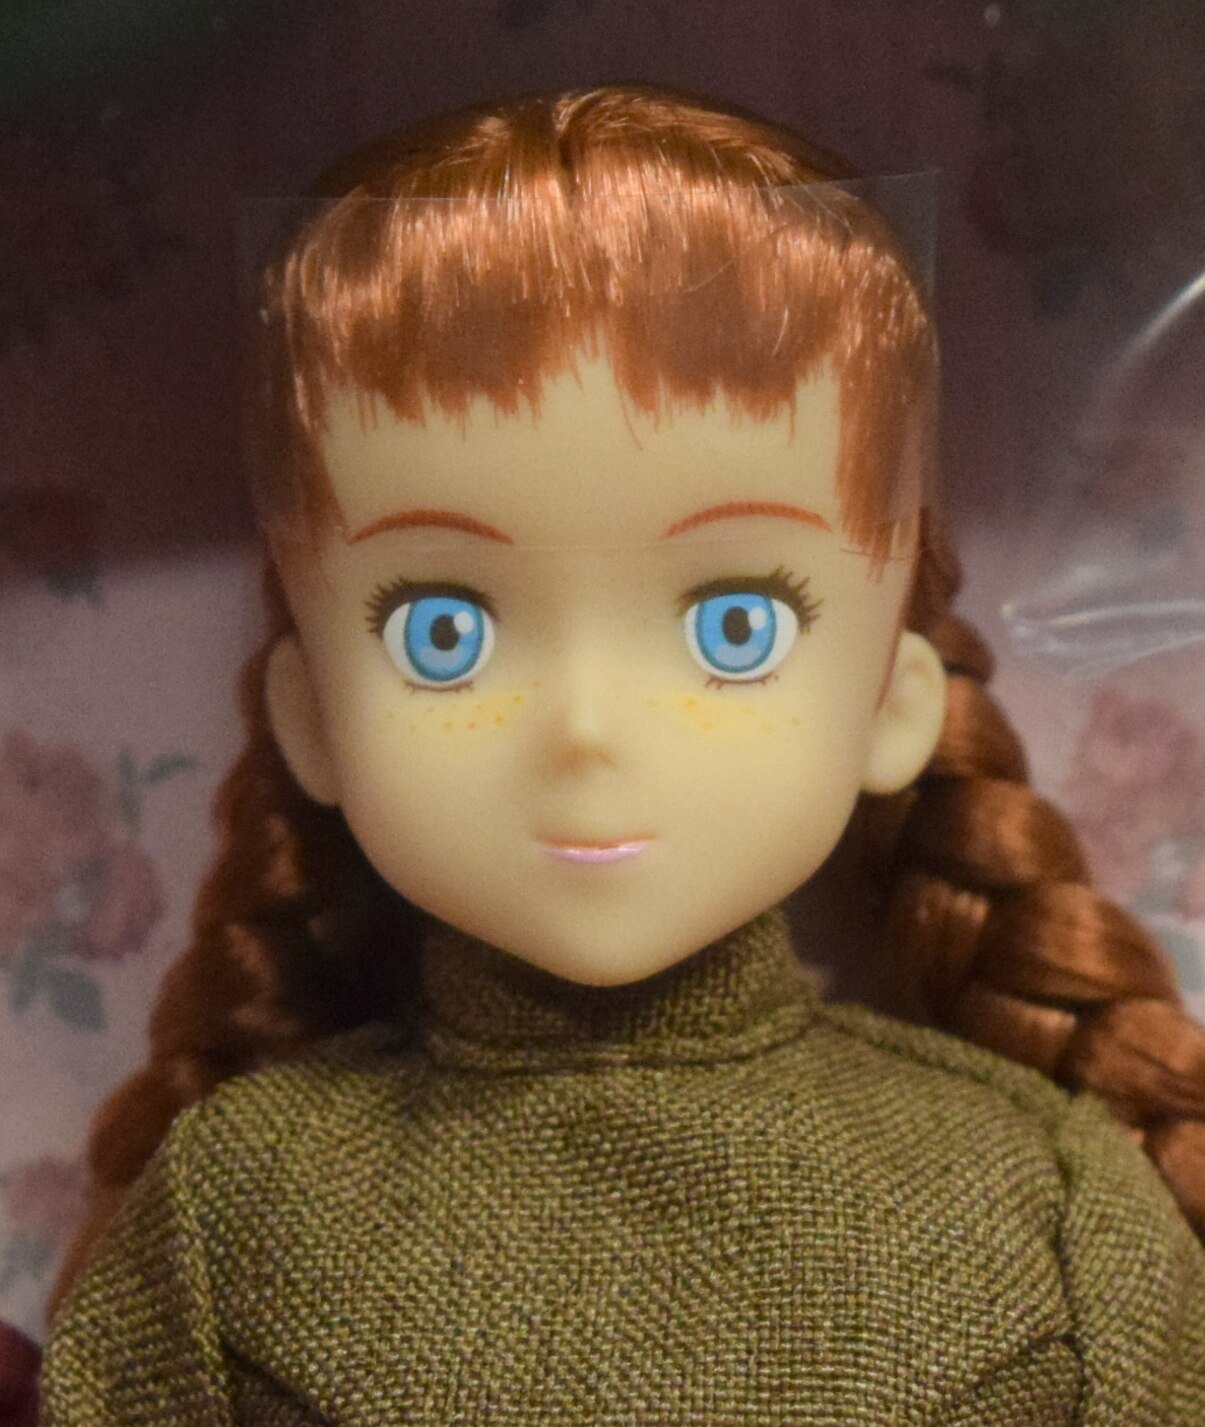 【日本で買】タカラ 1993年 赤毛のアン リカちゃん 人形 フィギュア 未使用 人形